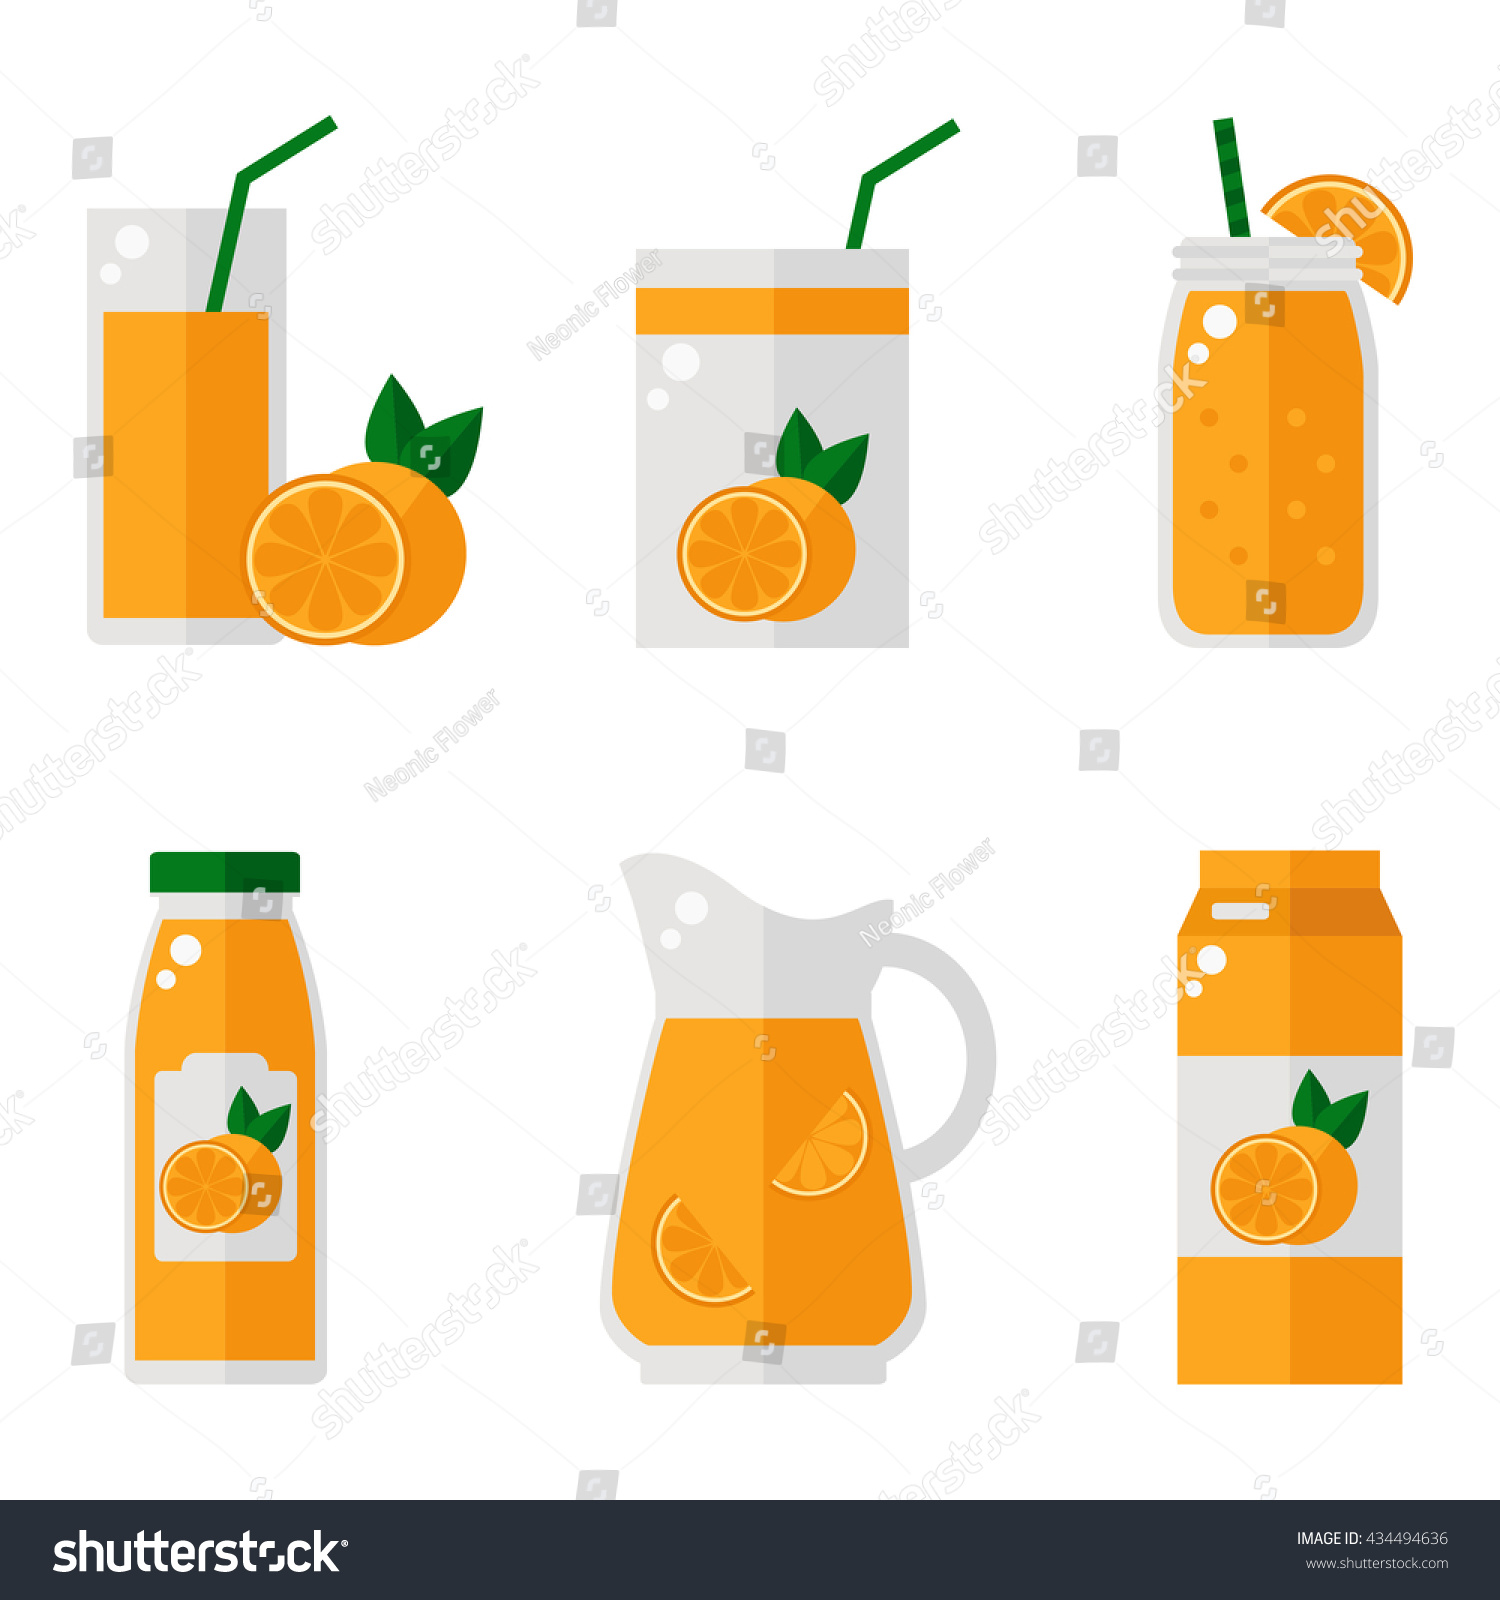 SVG of Orange juice isolated icons on white background. Orange juice bottle, glass, pack set. Flat style vector illustration. svg